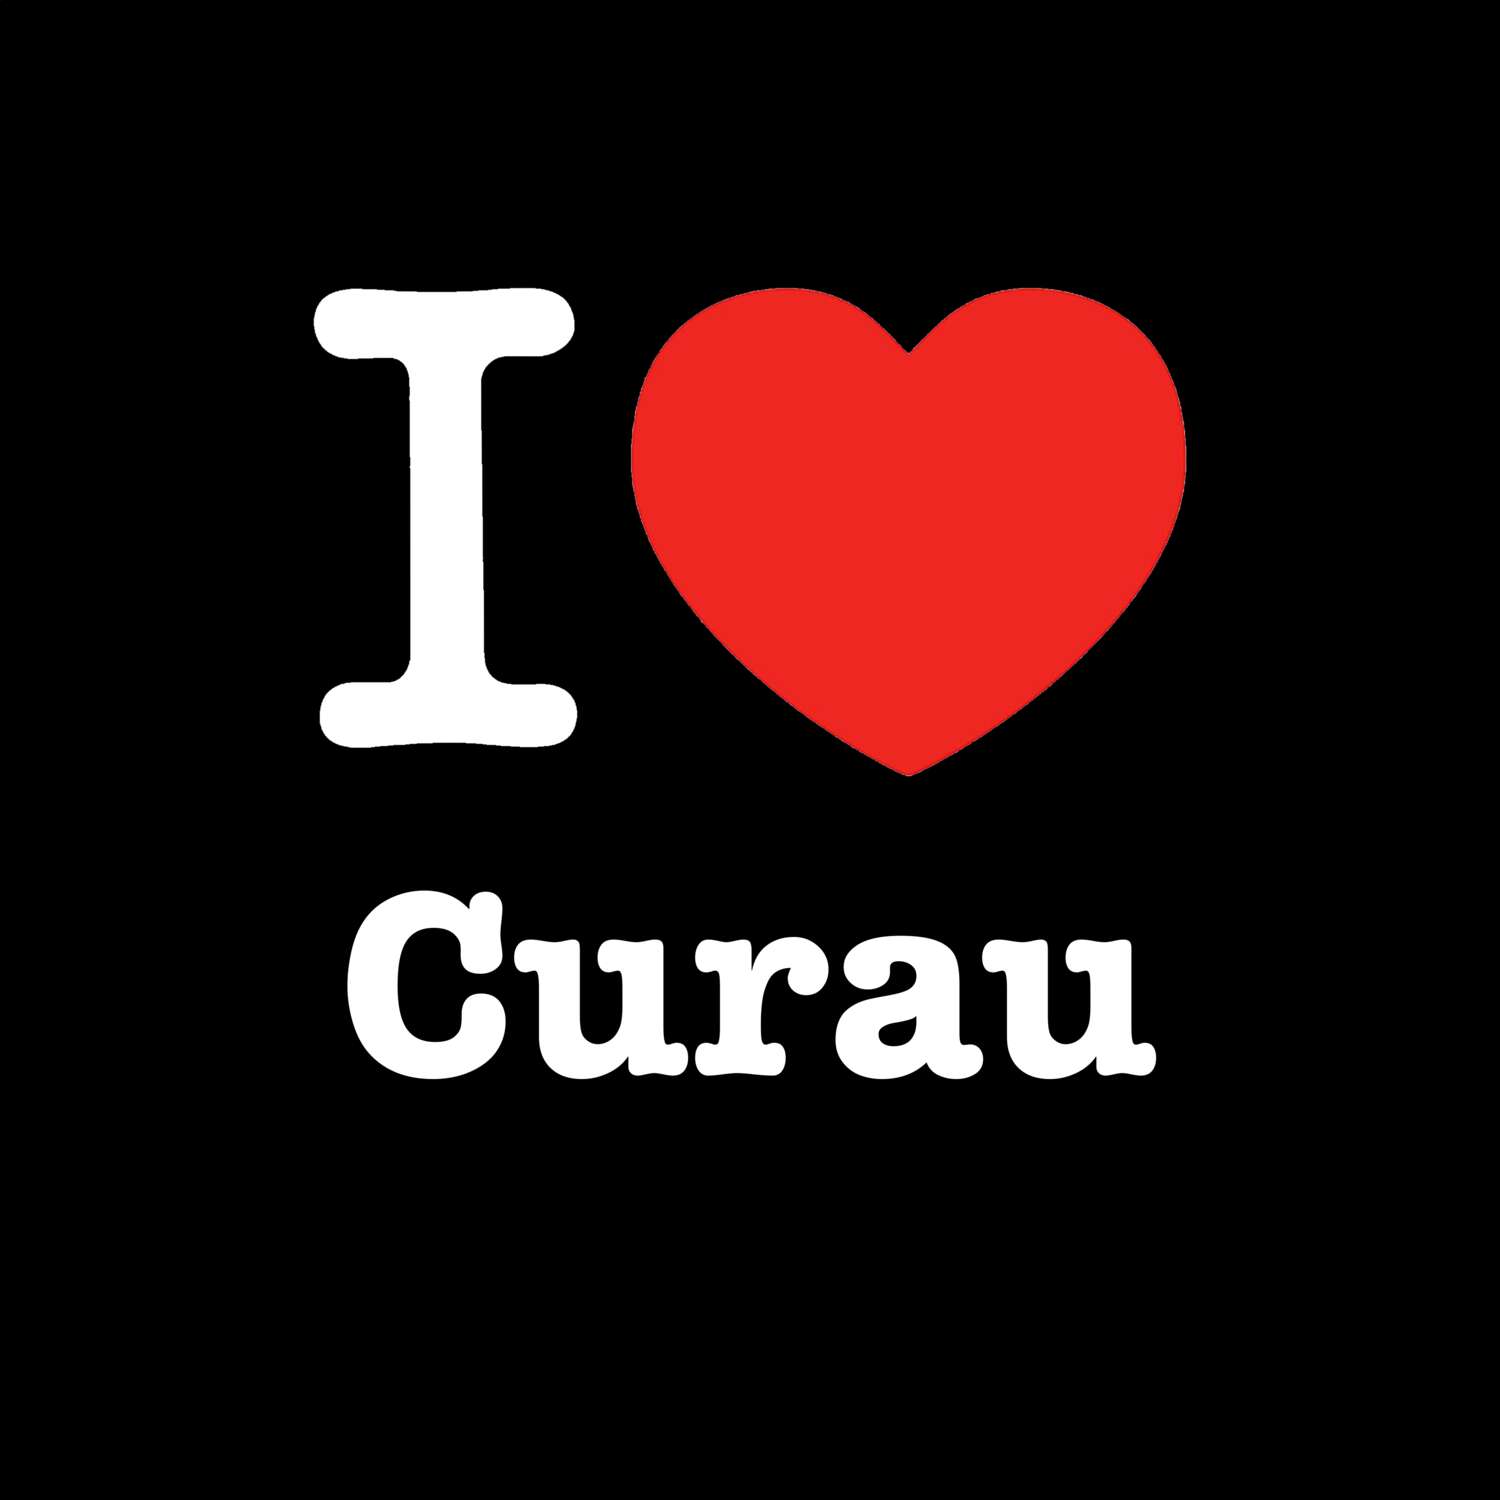 Curau T-Shirt »I love«